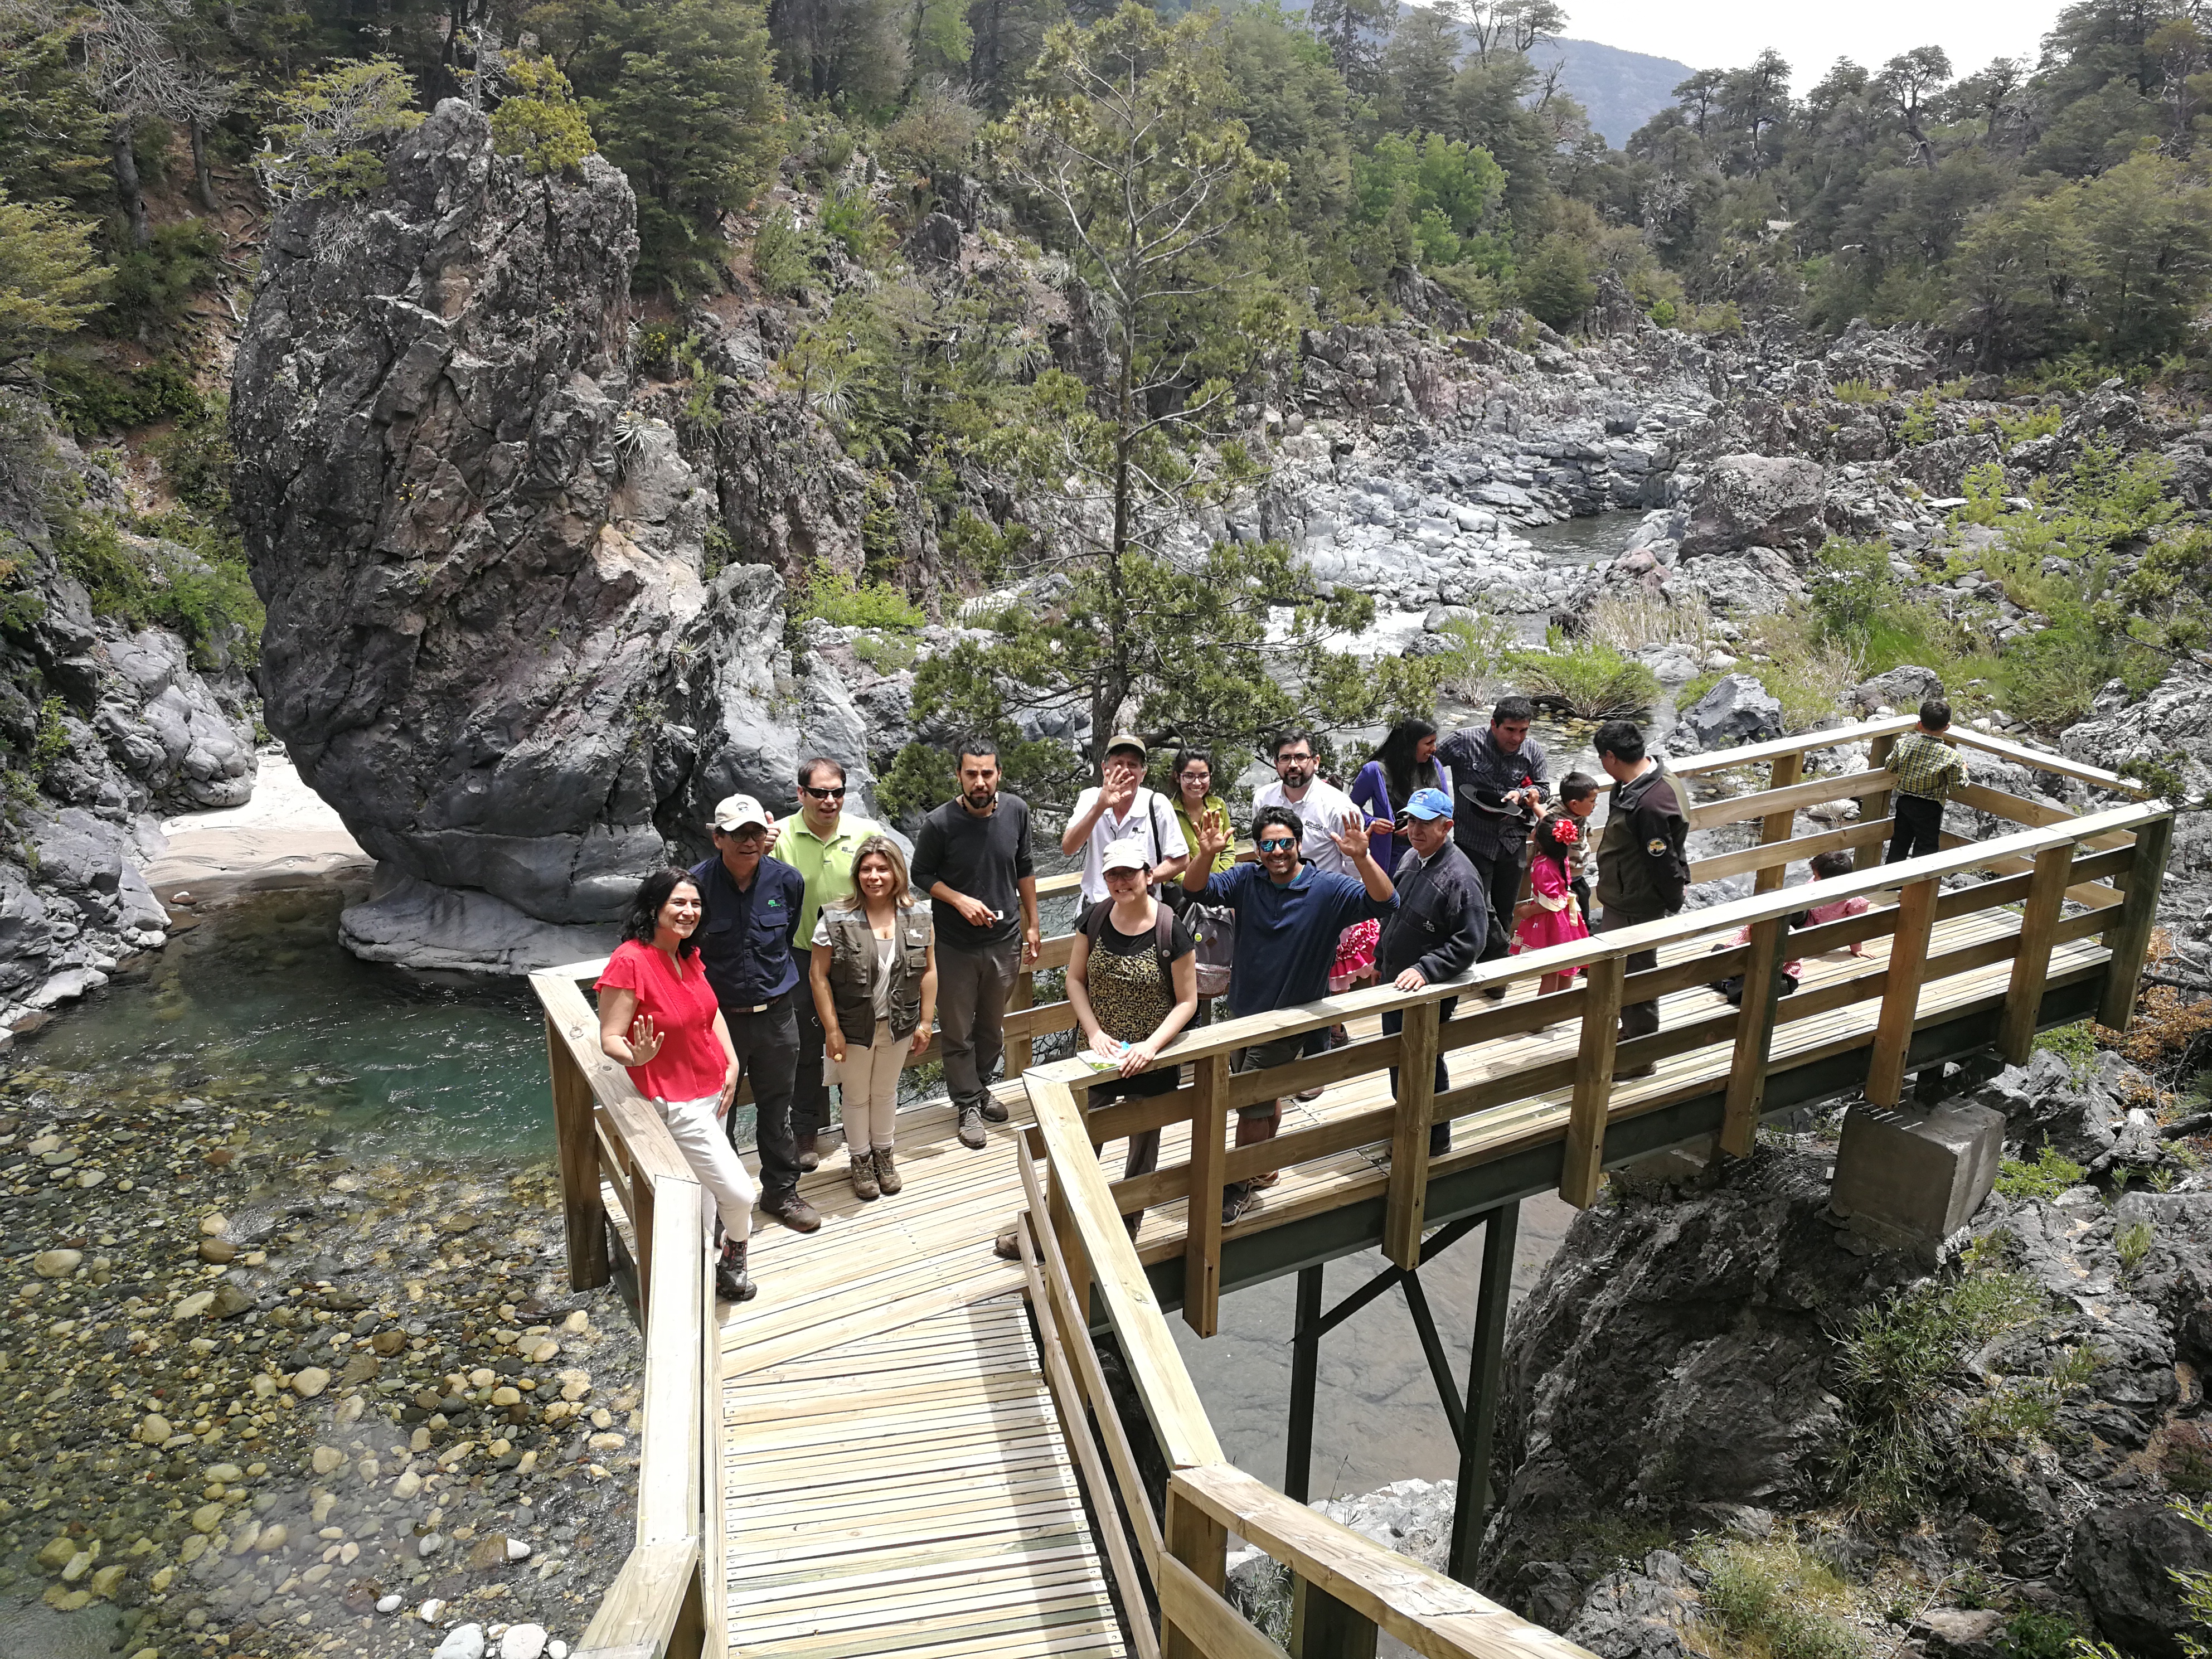 Subsecretaria Montes recorre nuevas obras de infraestructura turística en Parque Nacional Radal Siete Tazas